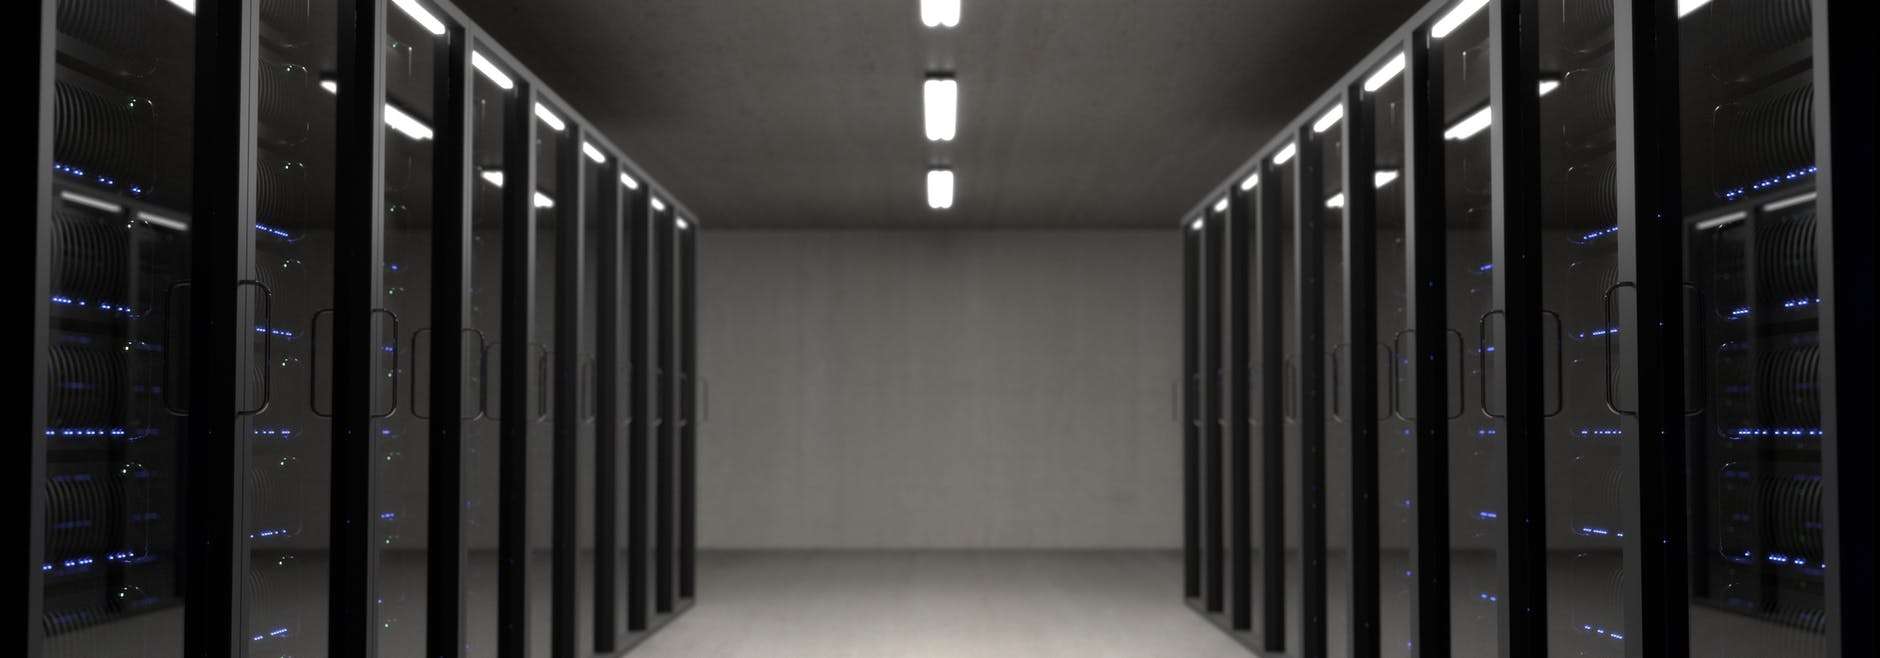 base de données - black server racks on a room